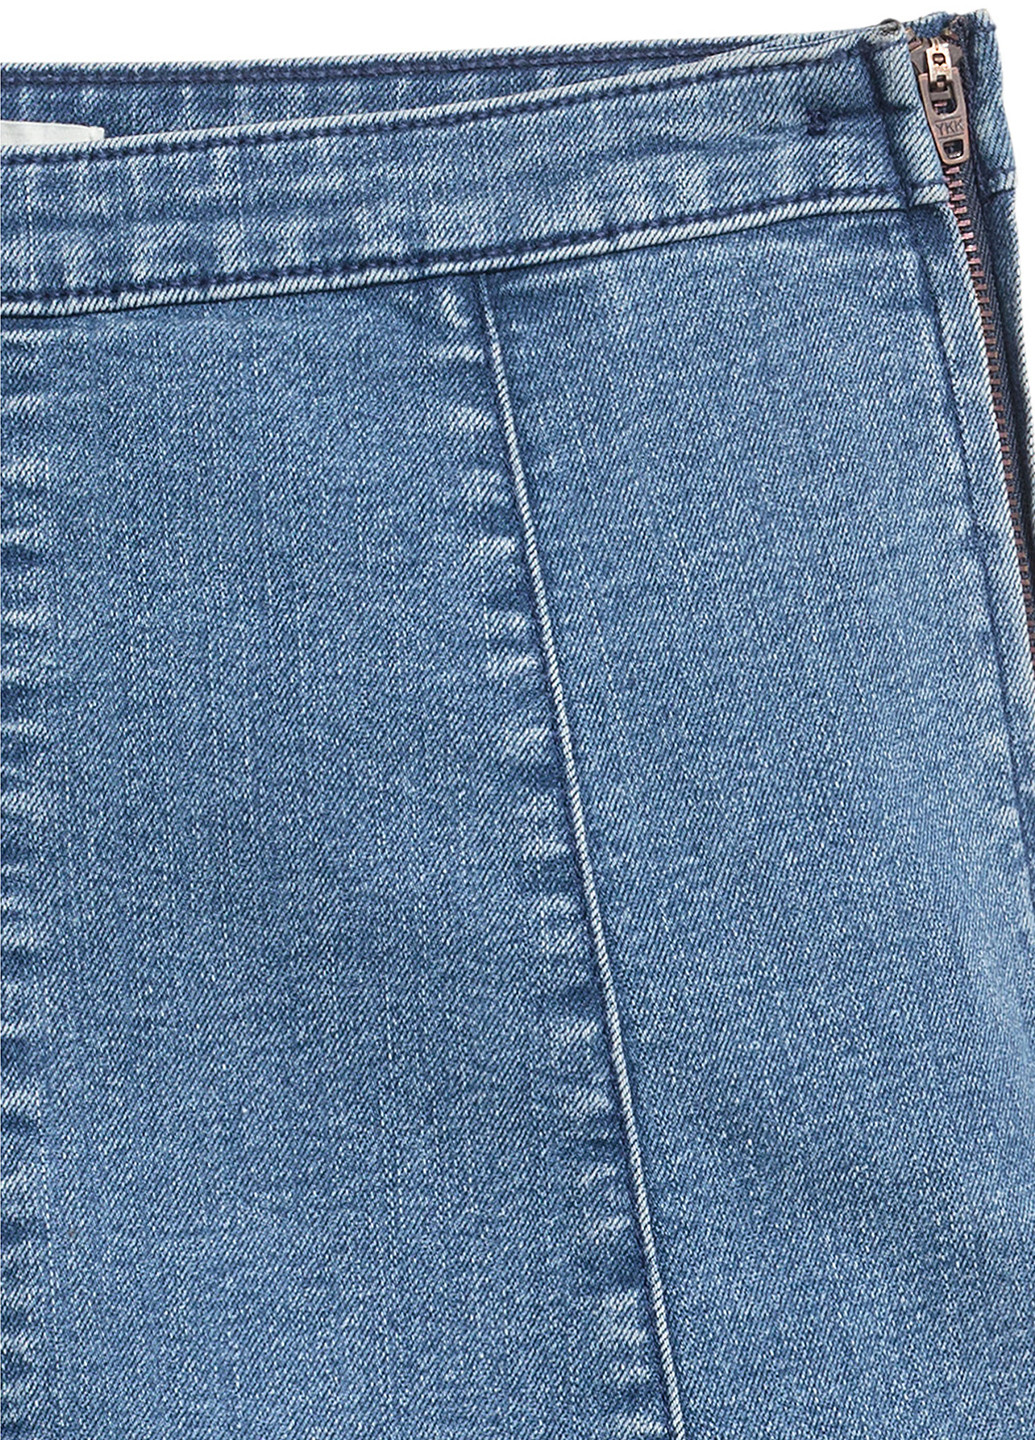 Шорты H&M бермуды голубые джинсовые